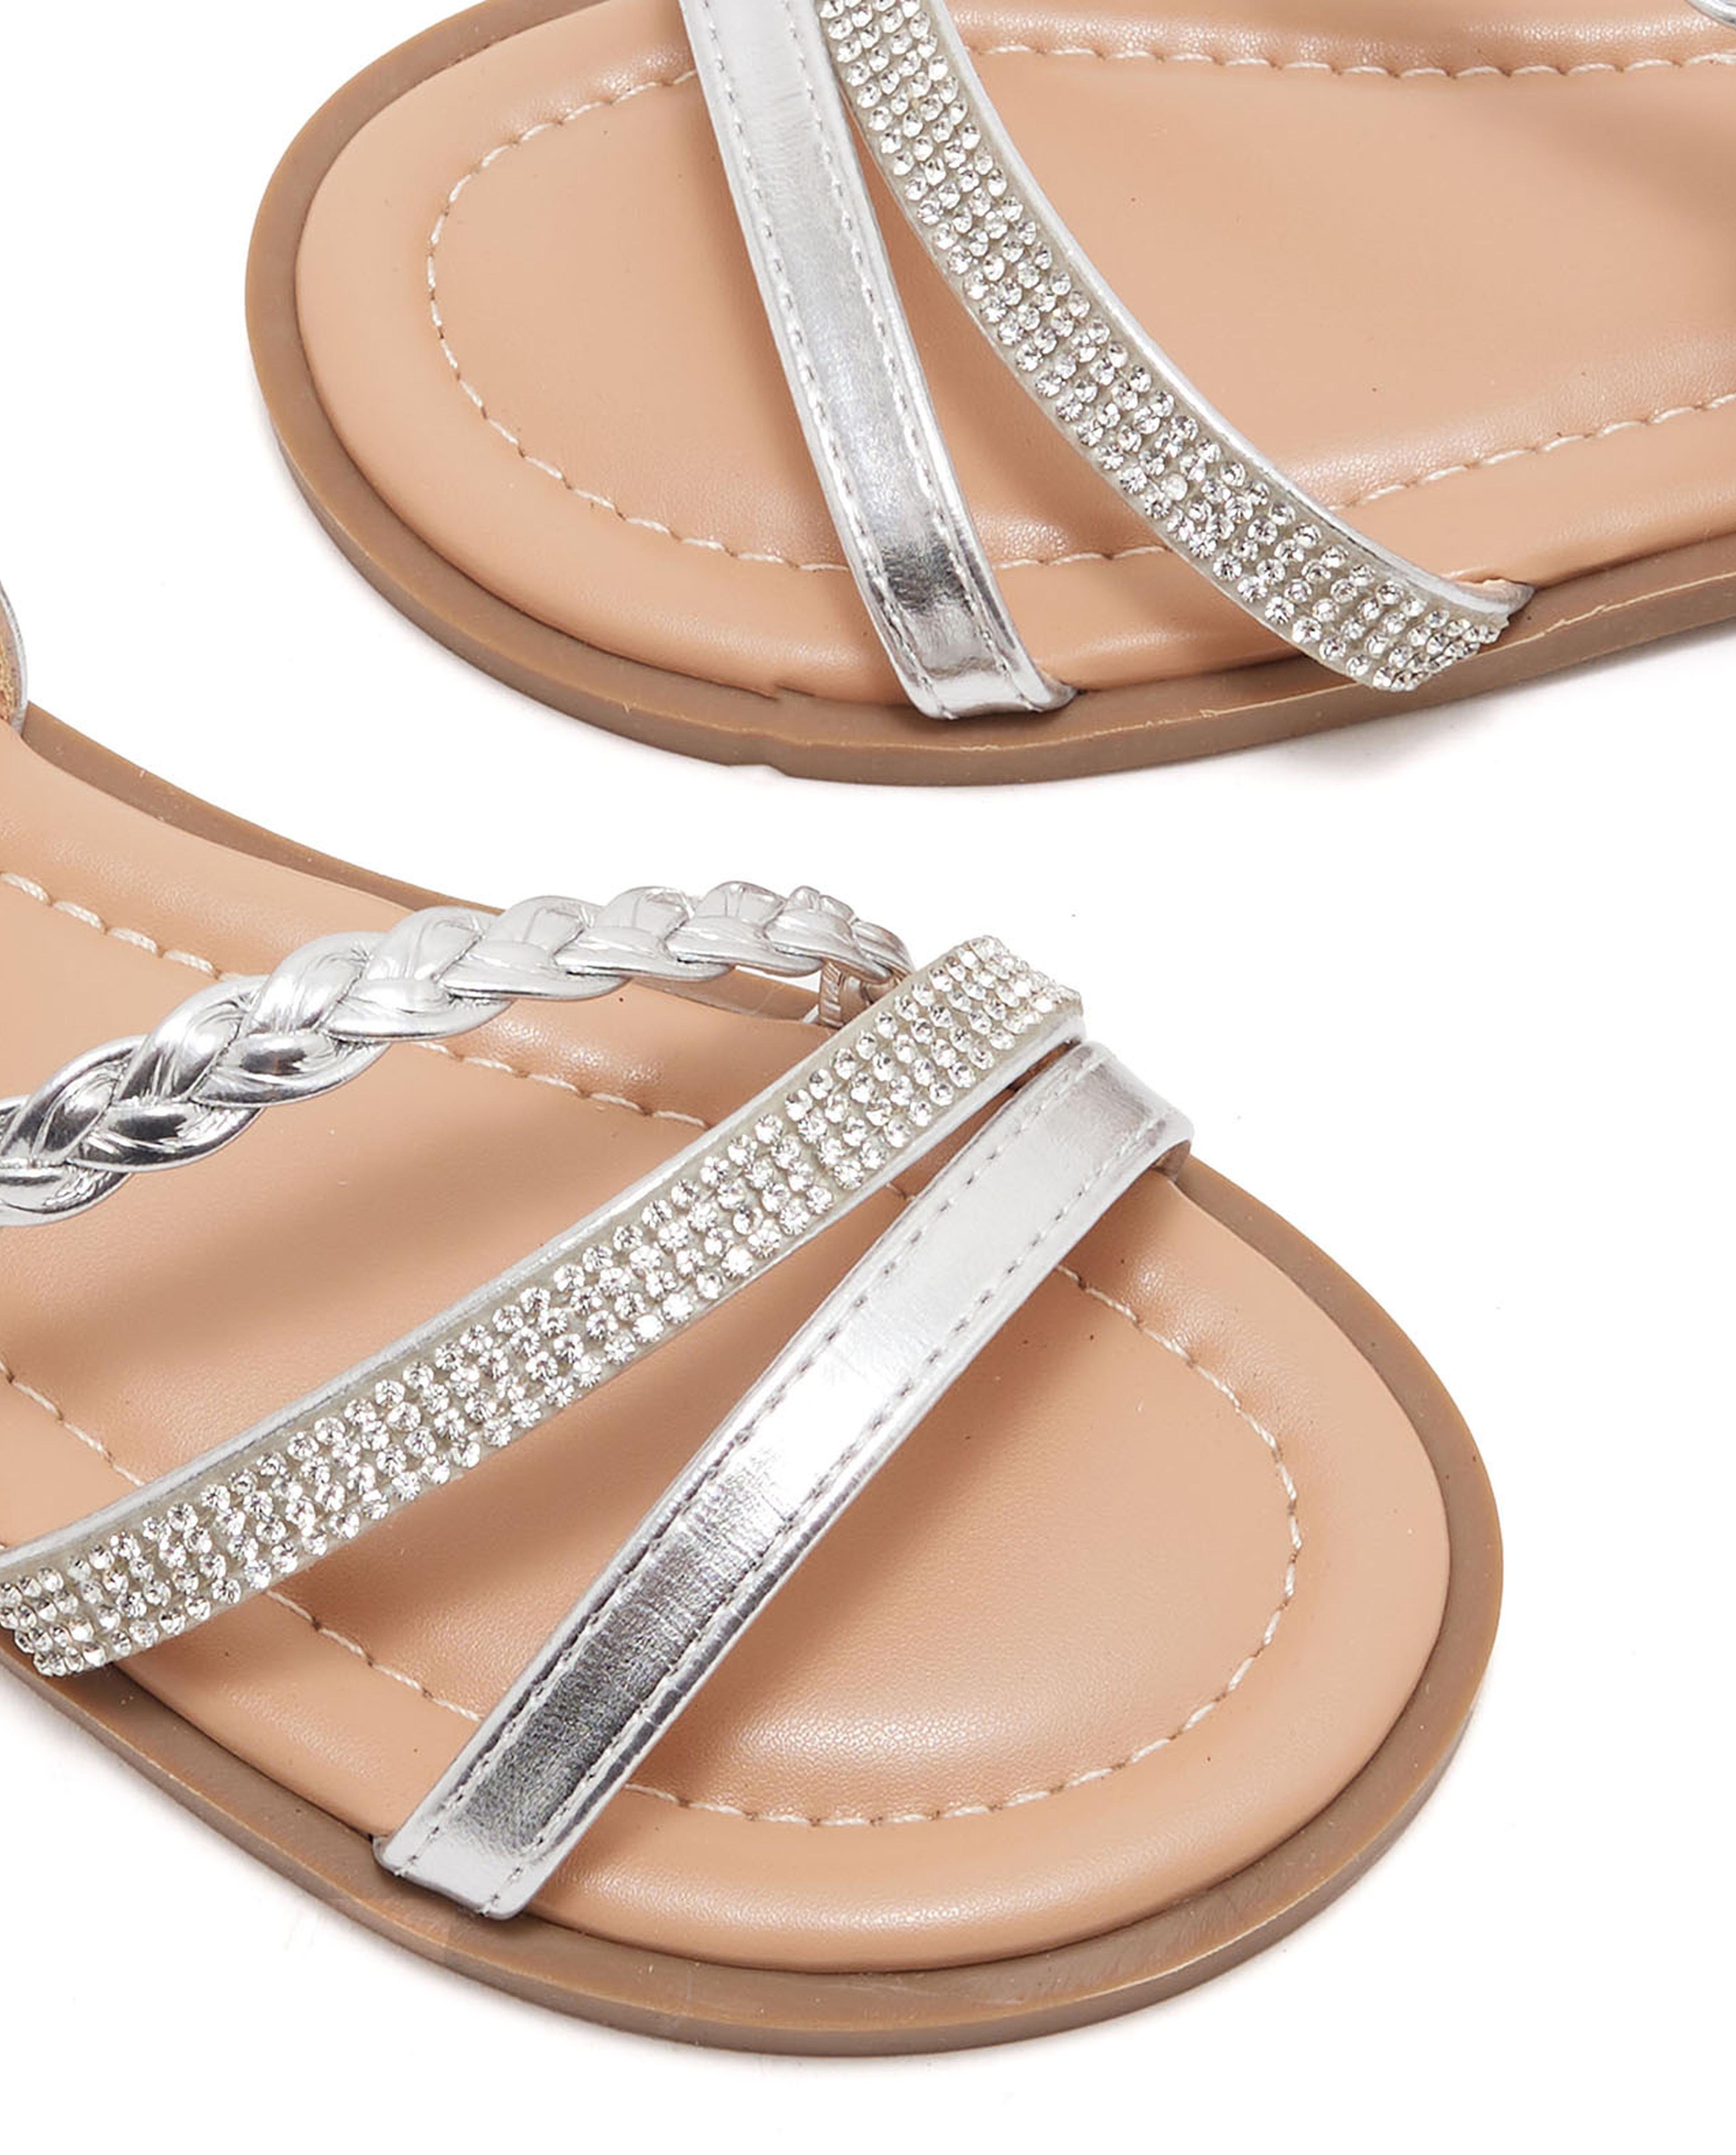 Embellished Comfort Sandals